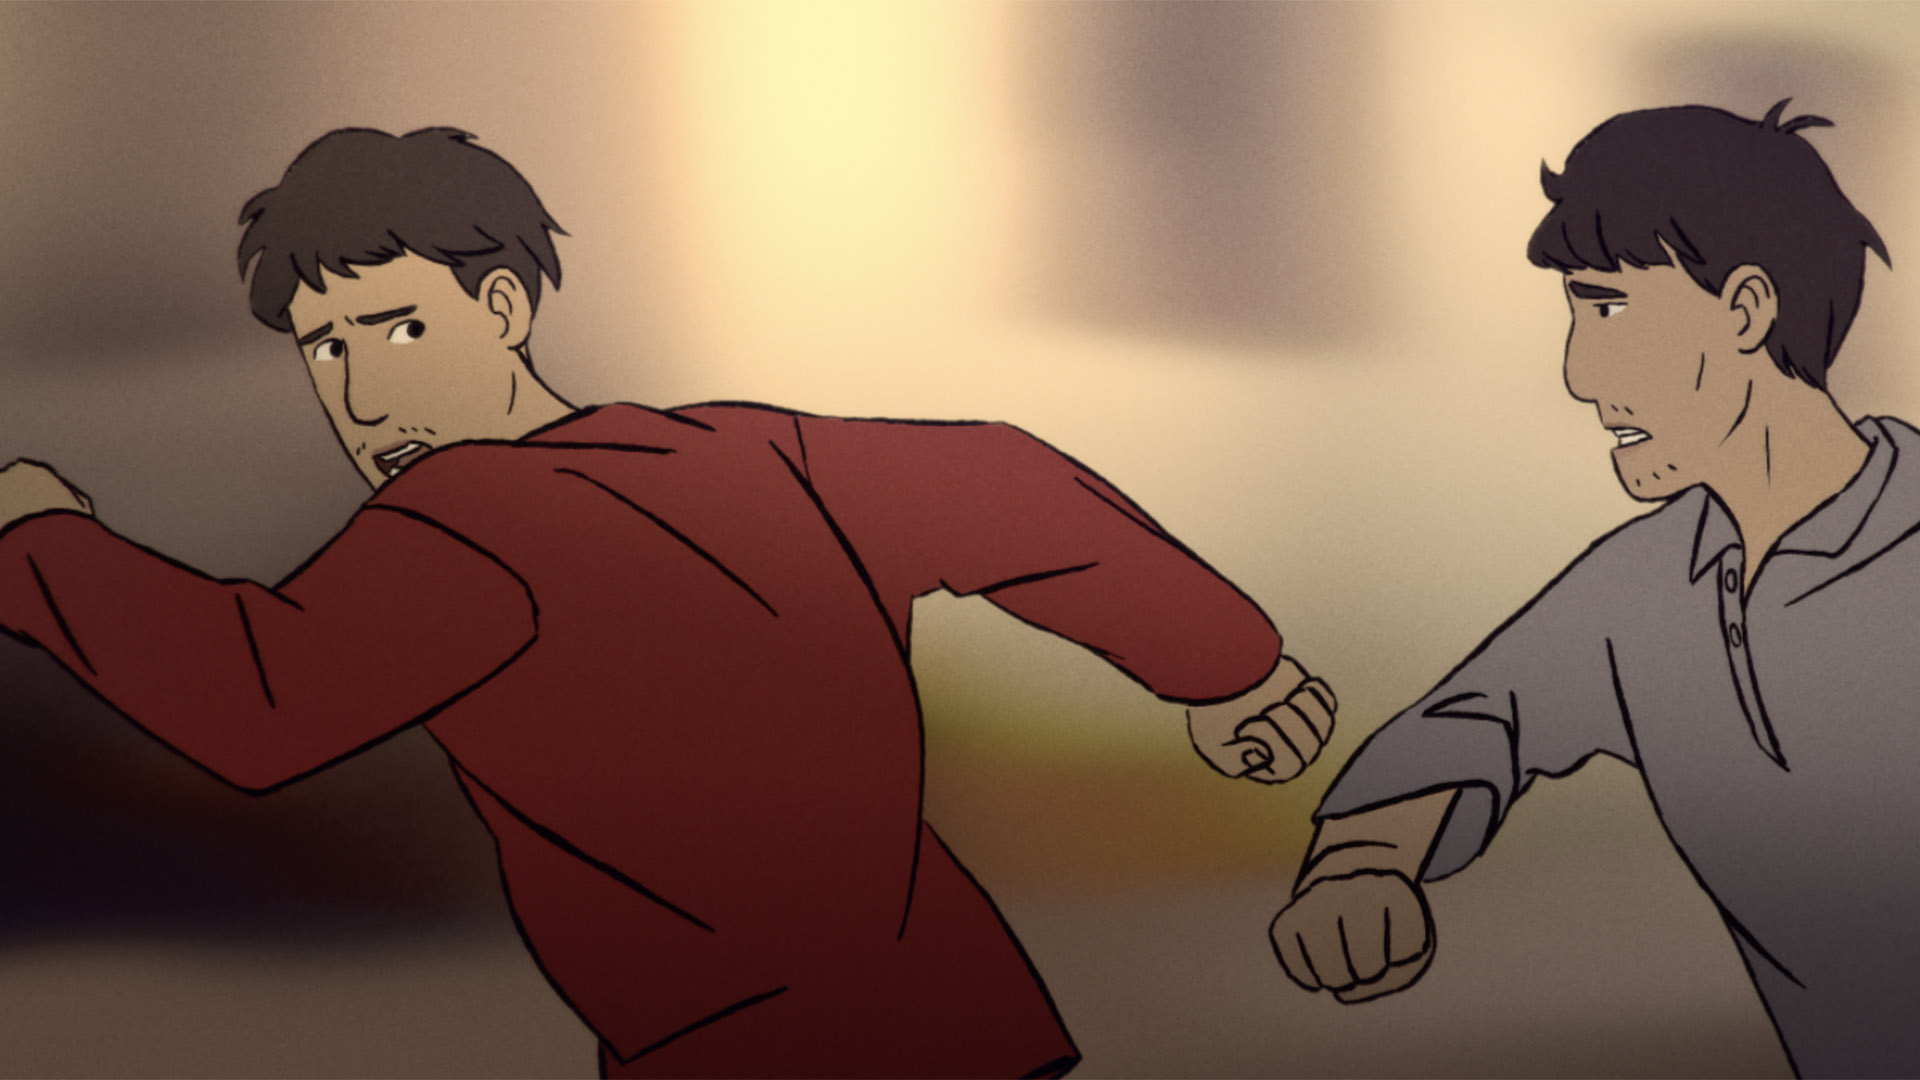 Trailer still frame from Flee, two men running animated